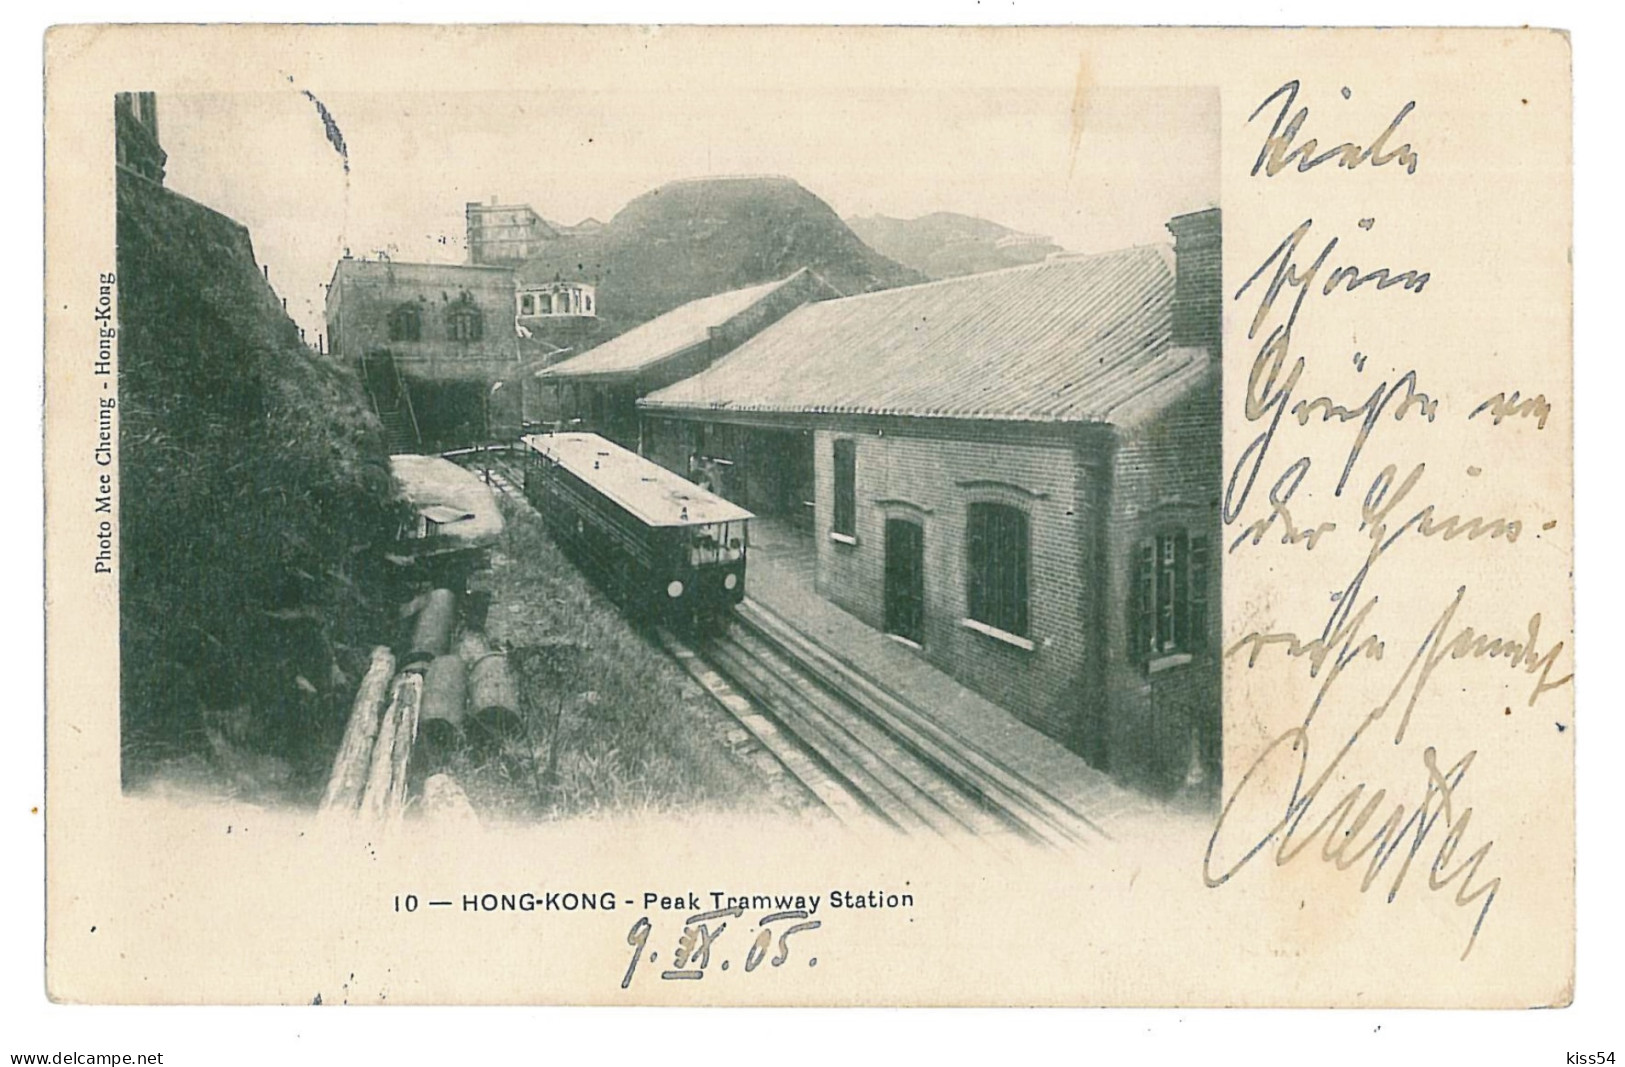 CH 51 - 9698 HONG KONG, Peak Tramway Station, China - Old Postcard - Used - 1905 - Chine (Hong Kong)